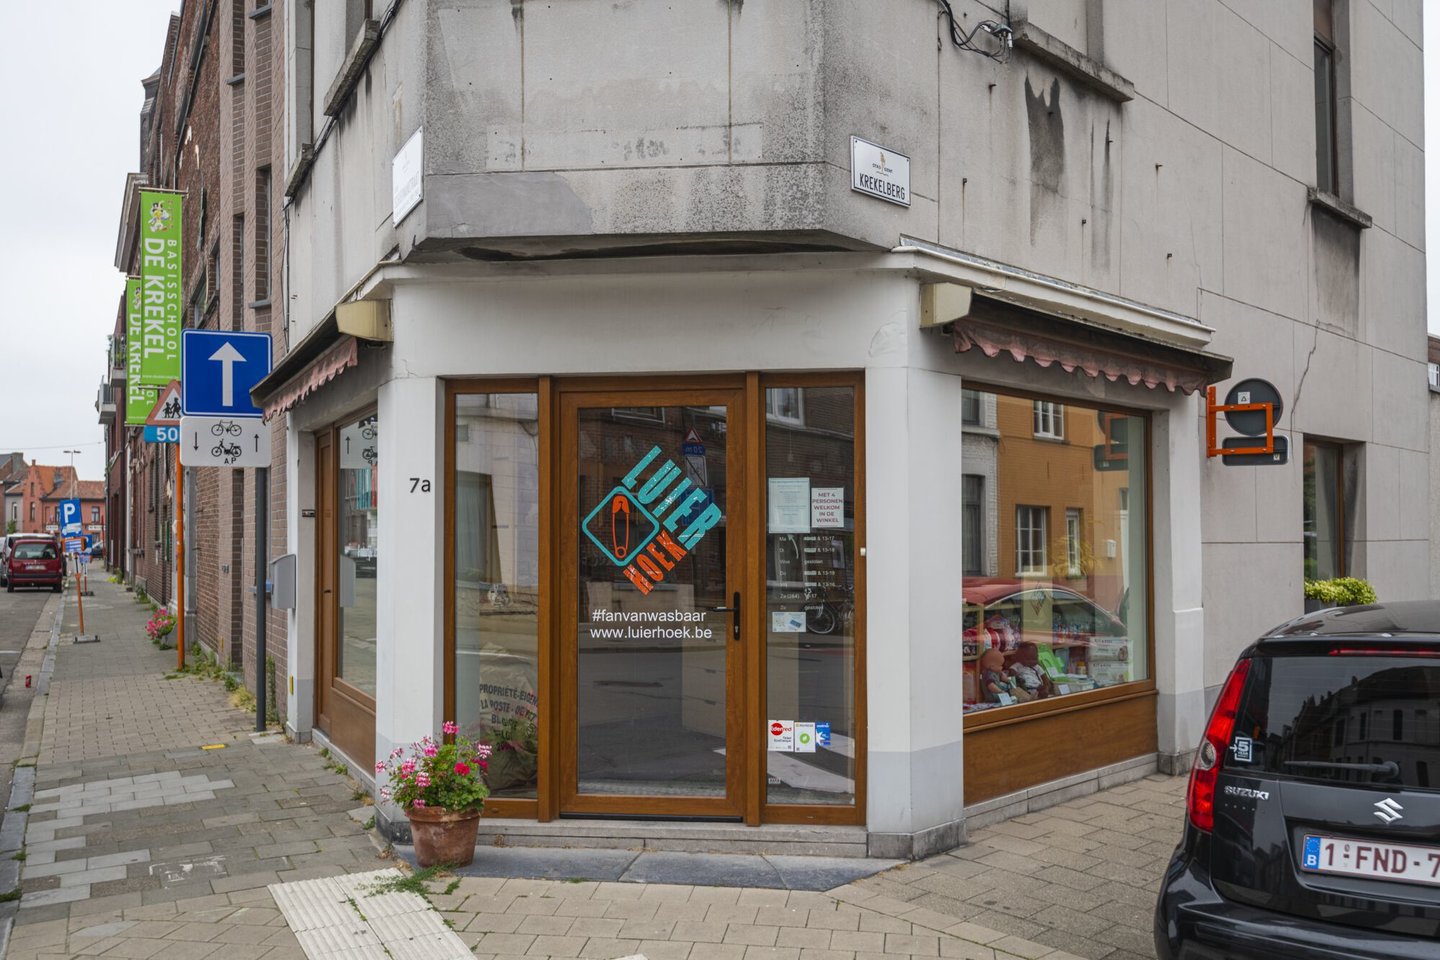 Etalage van Luierhoek, een winkel van wasbare luiers in Gent